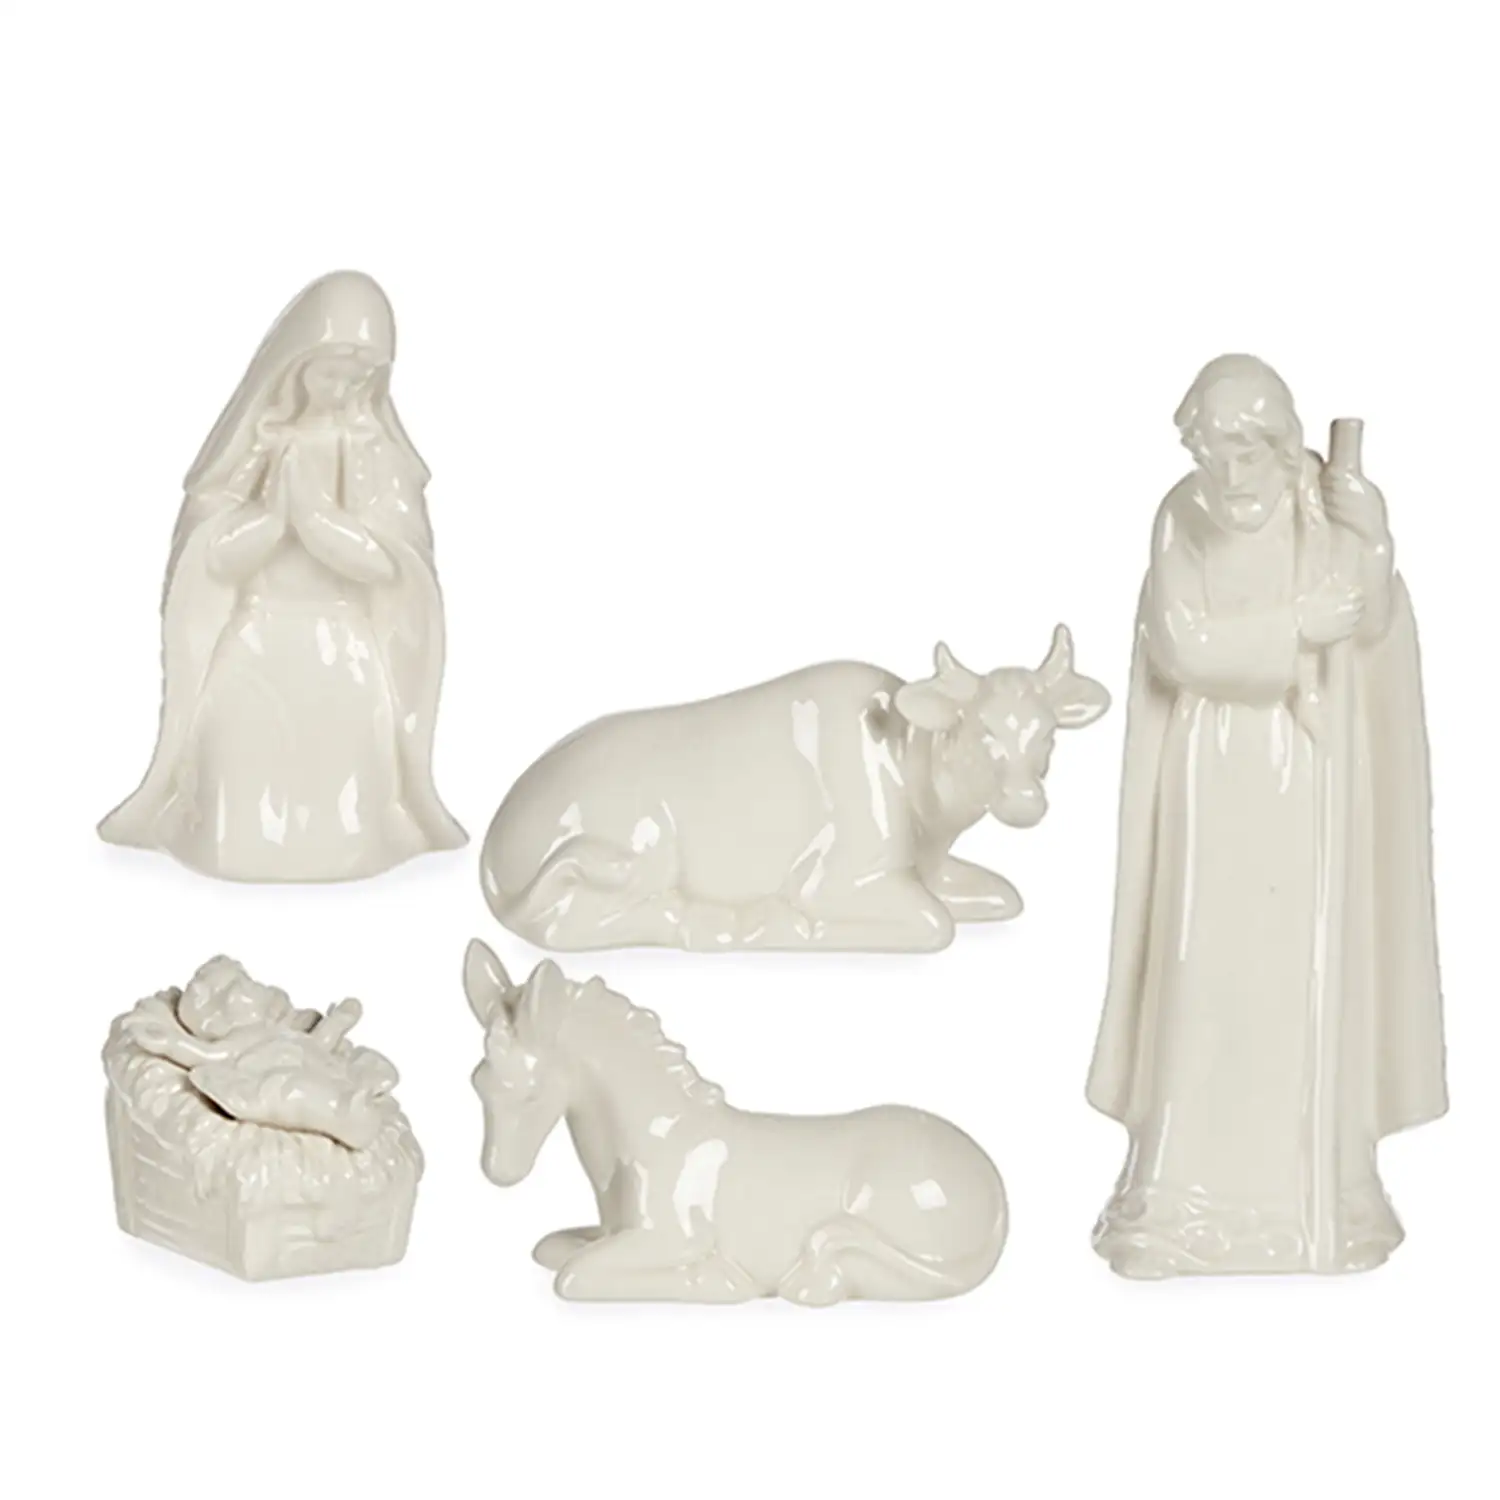 Nacimiento de cerámica con 5 figuritas.